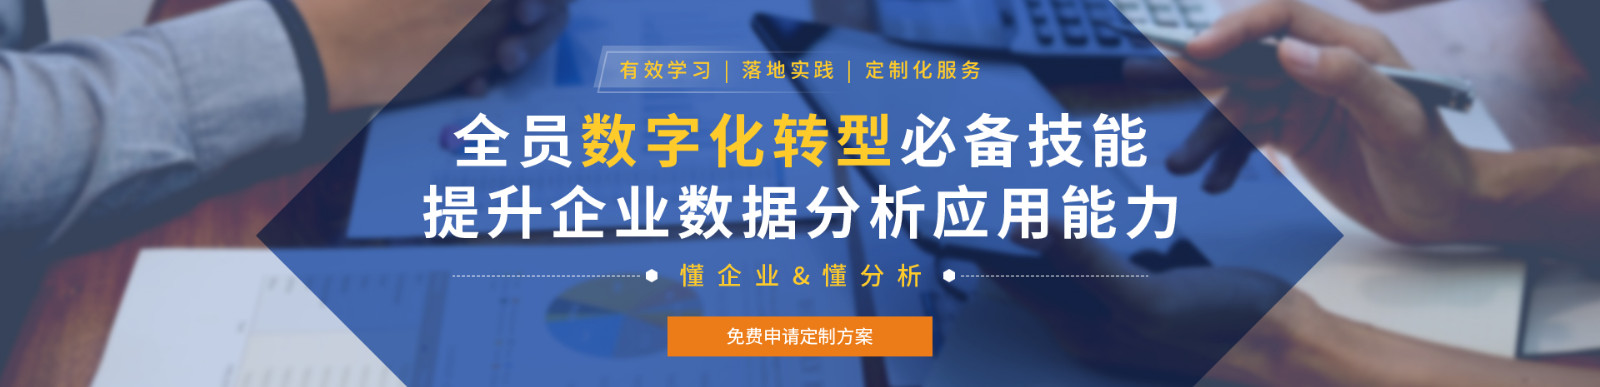 北京办公软件-Excel培训